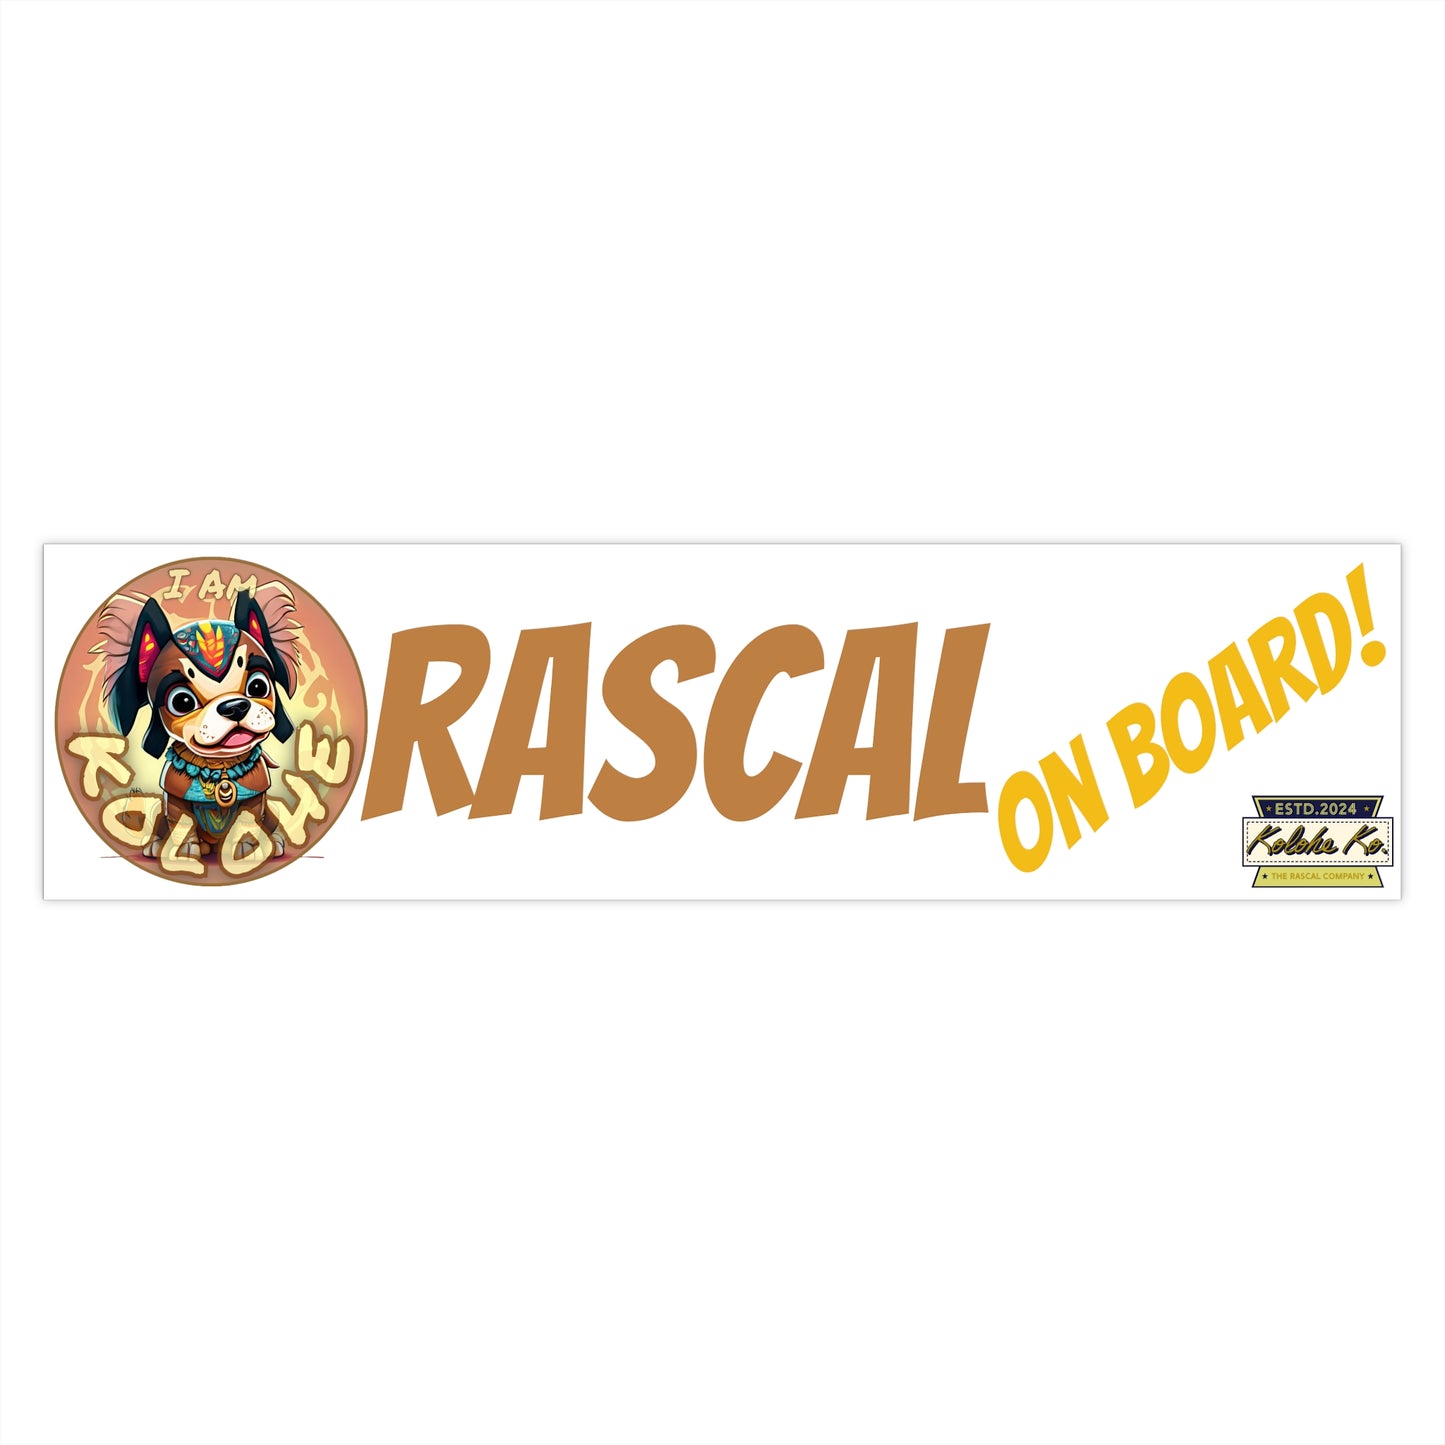 I AM Kolohe: Rascal On Board | Bumper Stickers | 3 Sizes | White Background | Kolohe Ko - Kolohe Ko